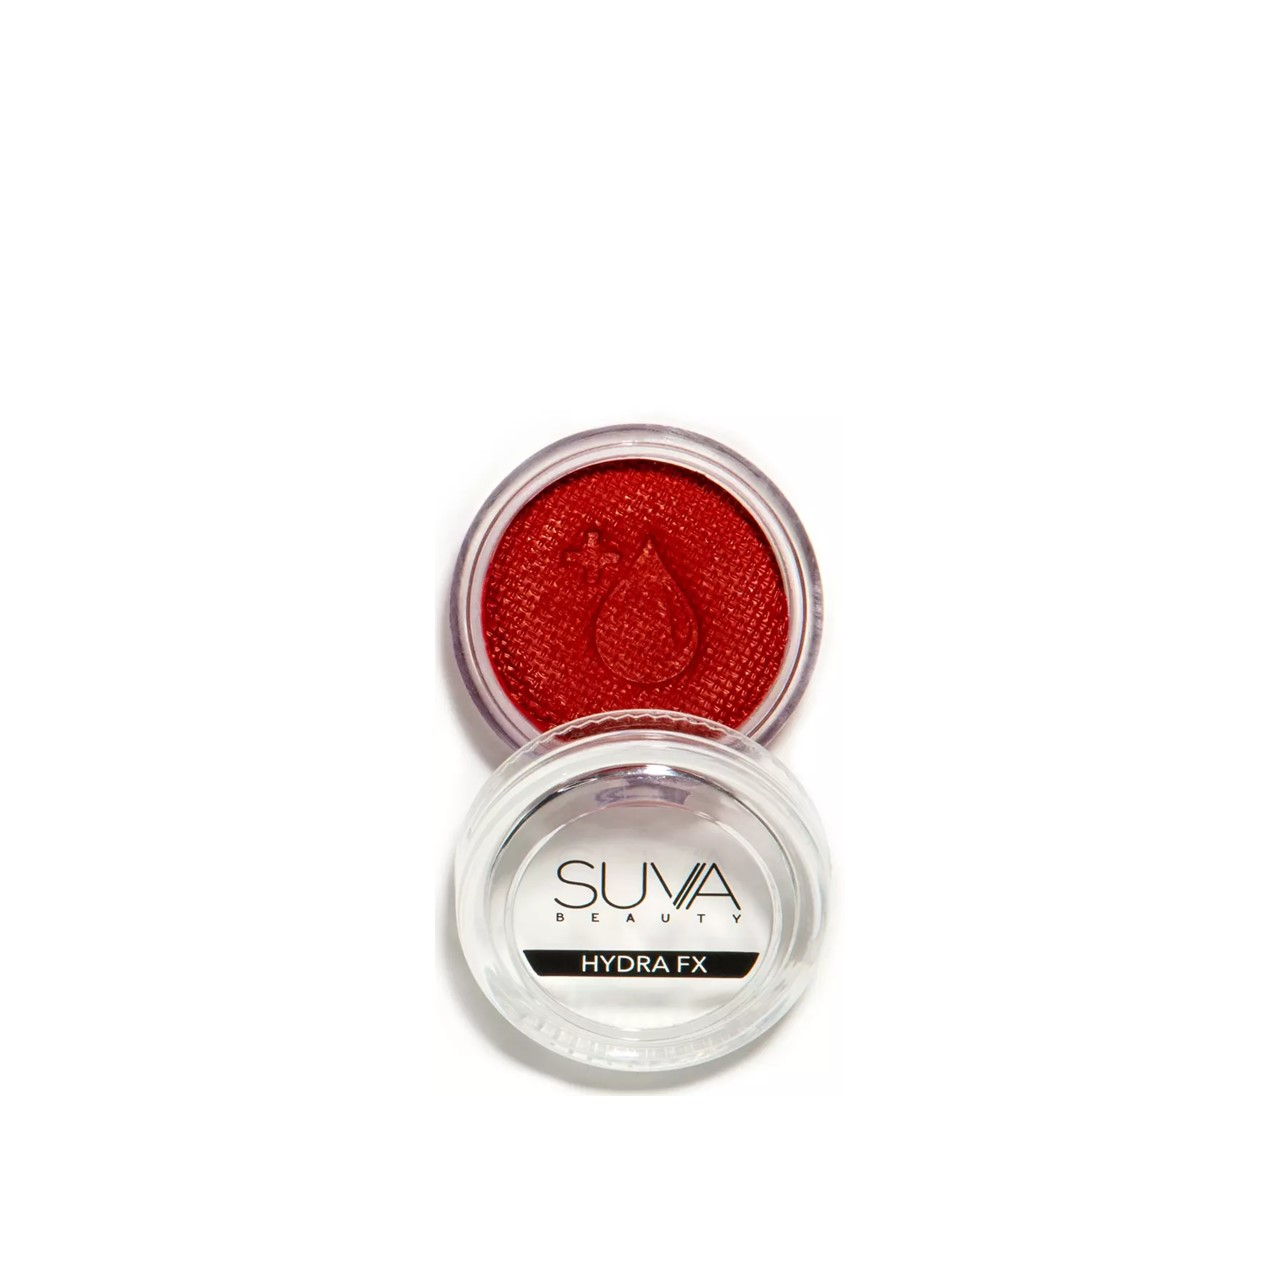 SUVA Beauty Hydra FX Bomb AF UV Body Art 10g (0.35oz)